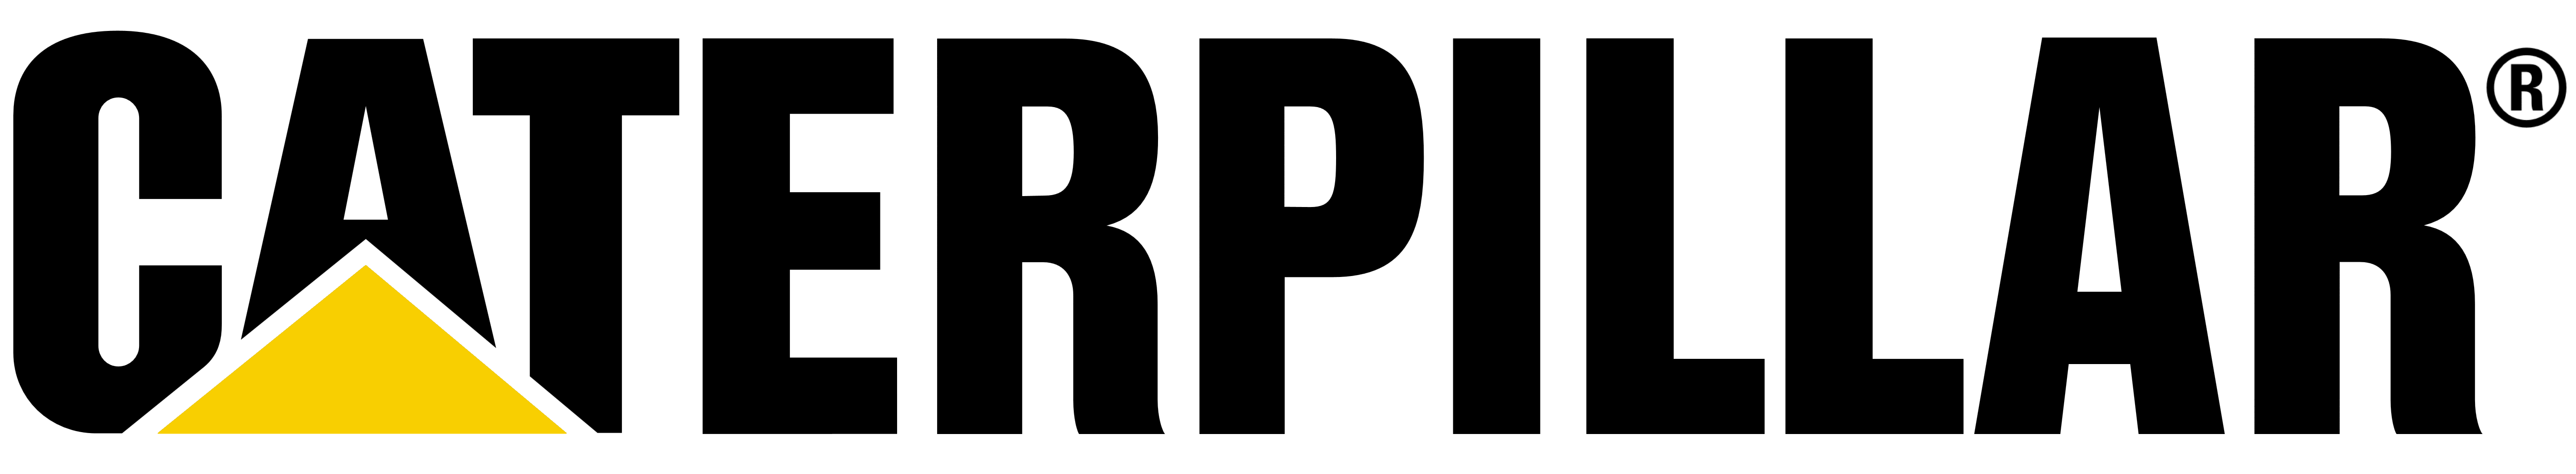 Caterpillar logo, logotype